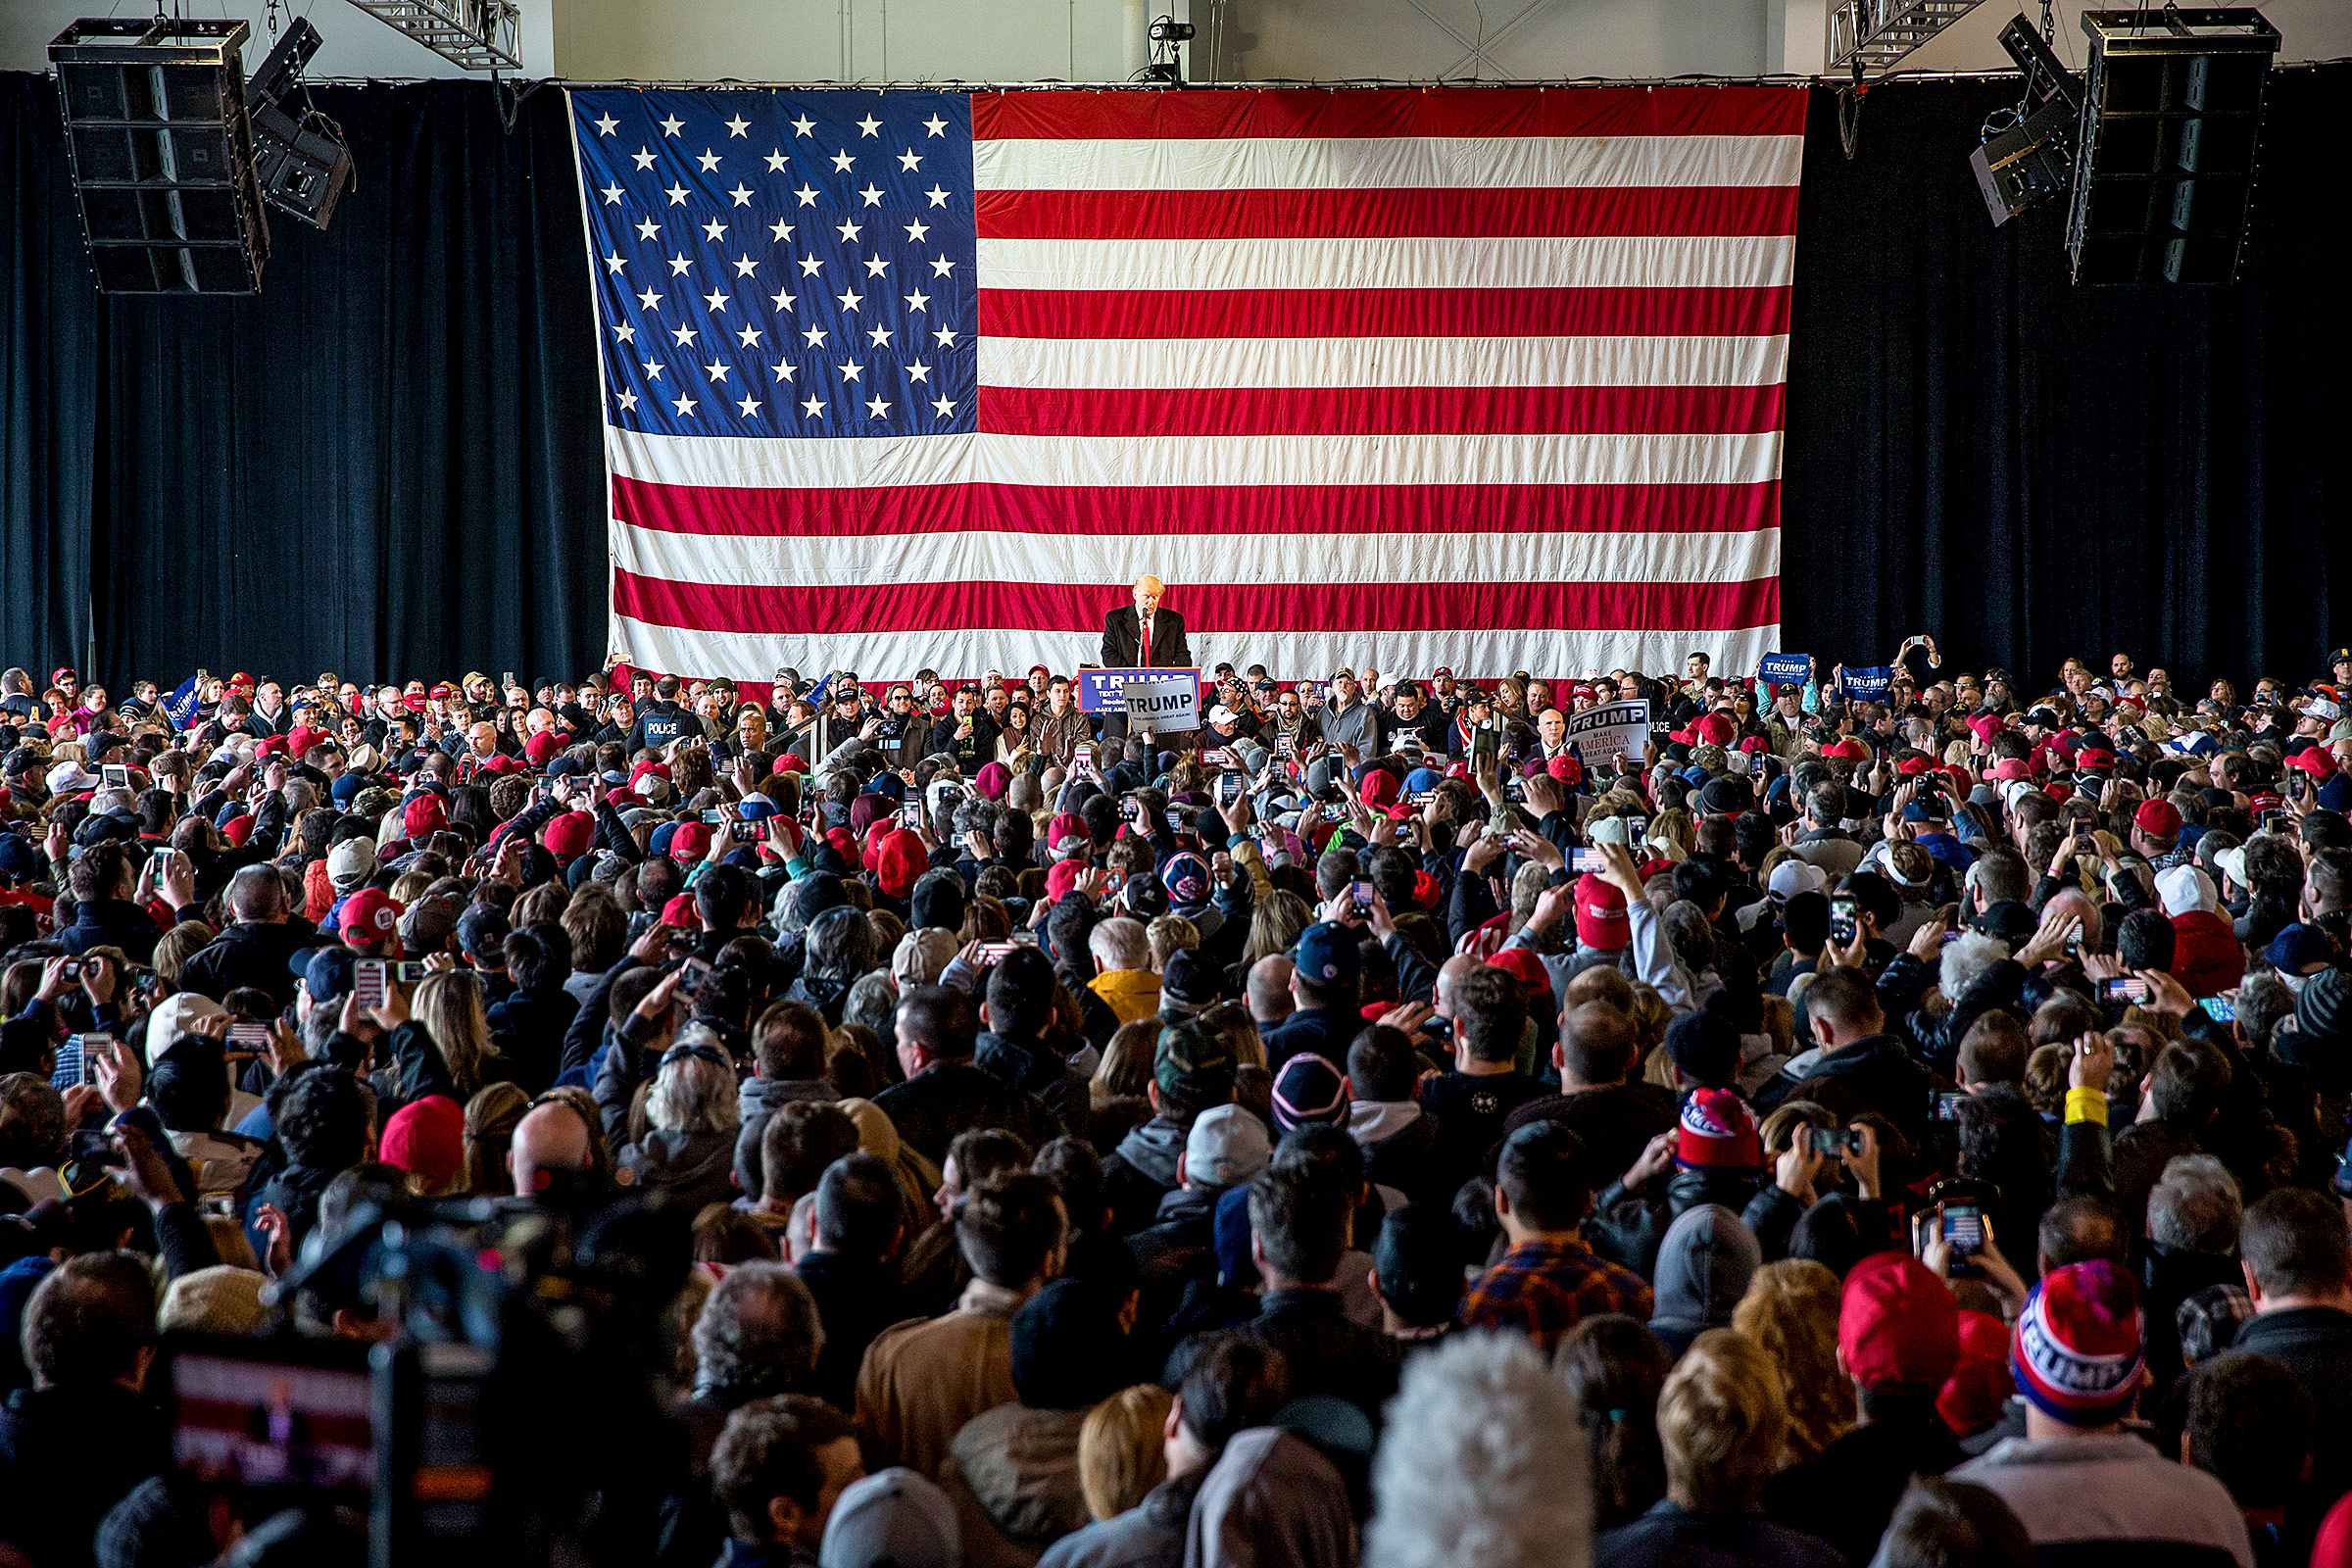 Ứng cử viên tổng thống của Đảng Cộng Hòa Donald Trump nói chuyện trước đám đông lớn tại cuộc vận động tranh cử cho chiến dịch tranh cử của ông ở Rochester, New York vào ngày 10/04/2016. (Ảnh: Brett Carlsen/Getty Images)